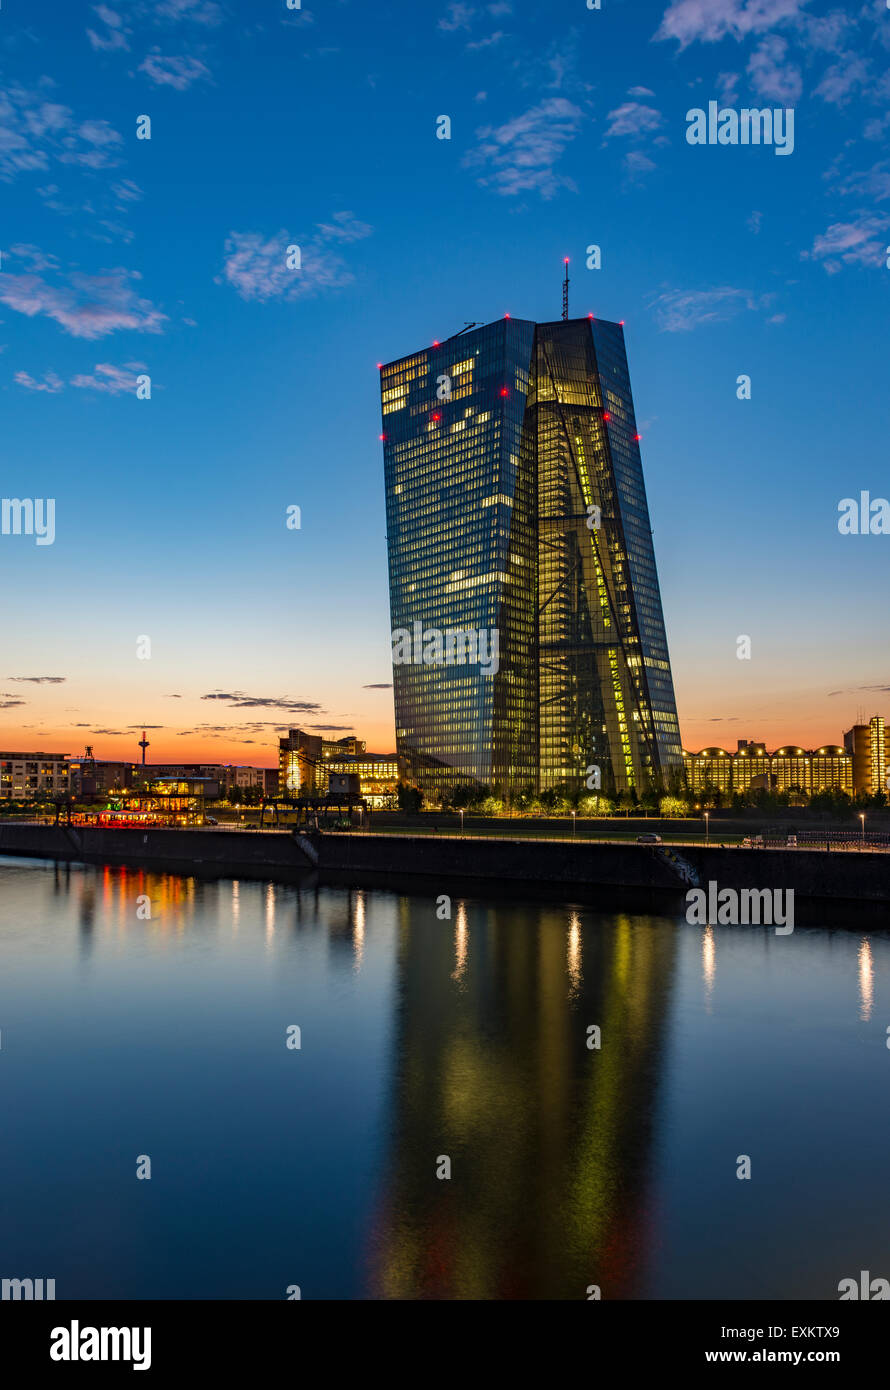 La nouvelle Banque centrale européenne, BCE, au coucher du soleil, Frankfurt am Main, Hesse, Allemagne Banque D'Images